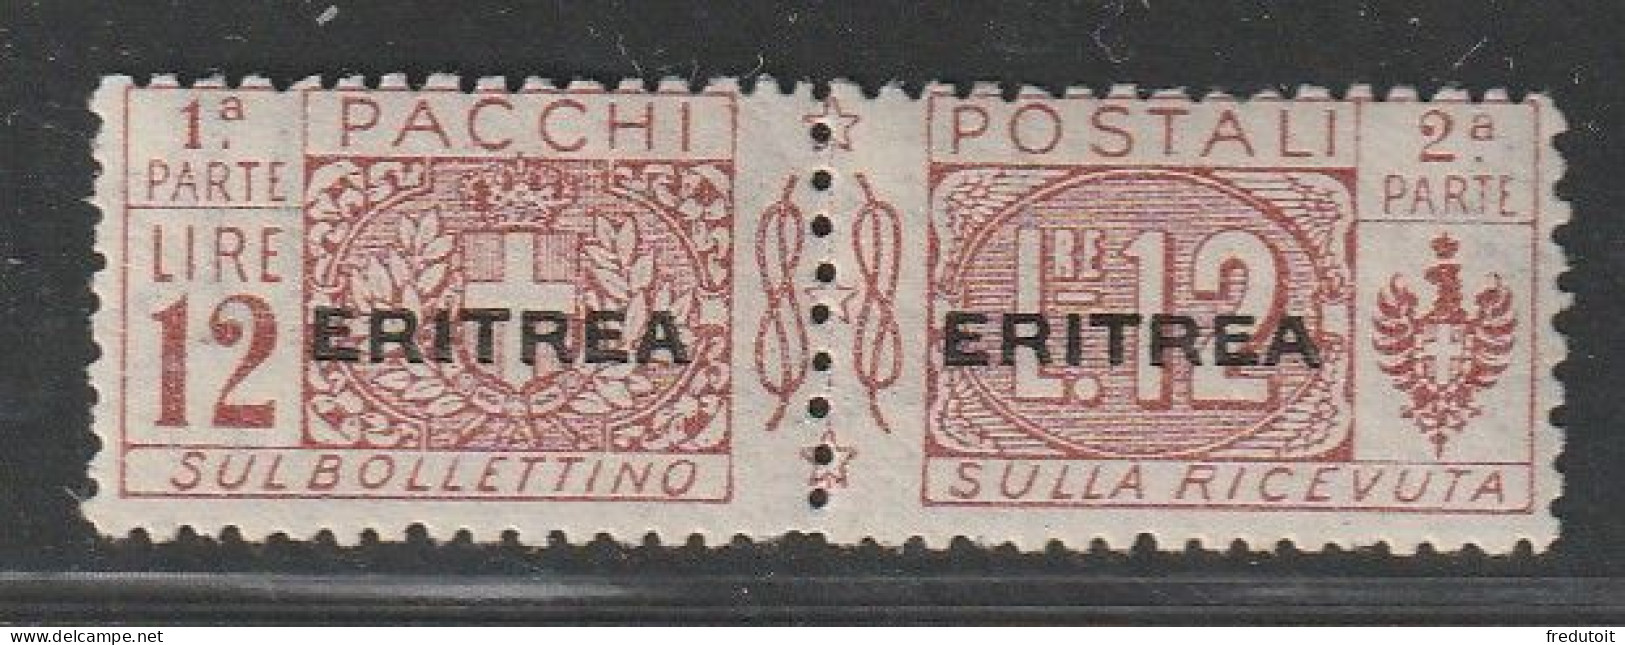 ERYTHREE - Colis Postaux N°19 * (1916-24) 12L Brun-rouge - Eritrée